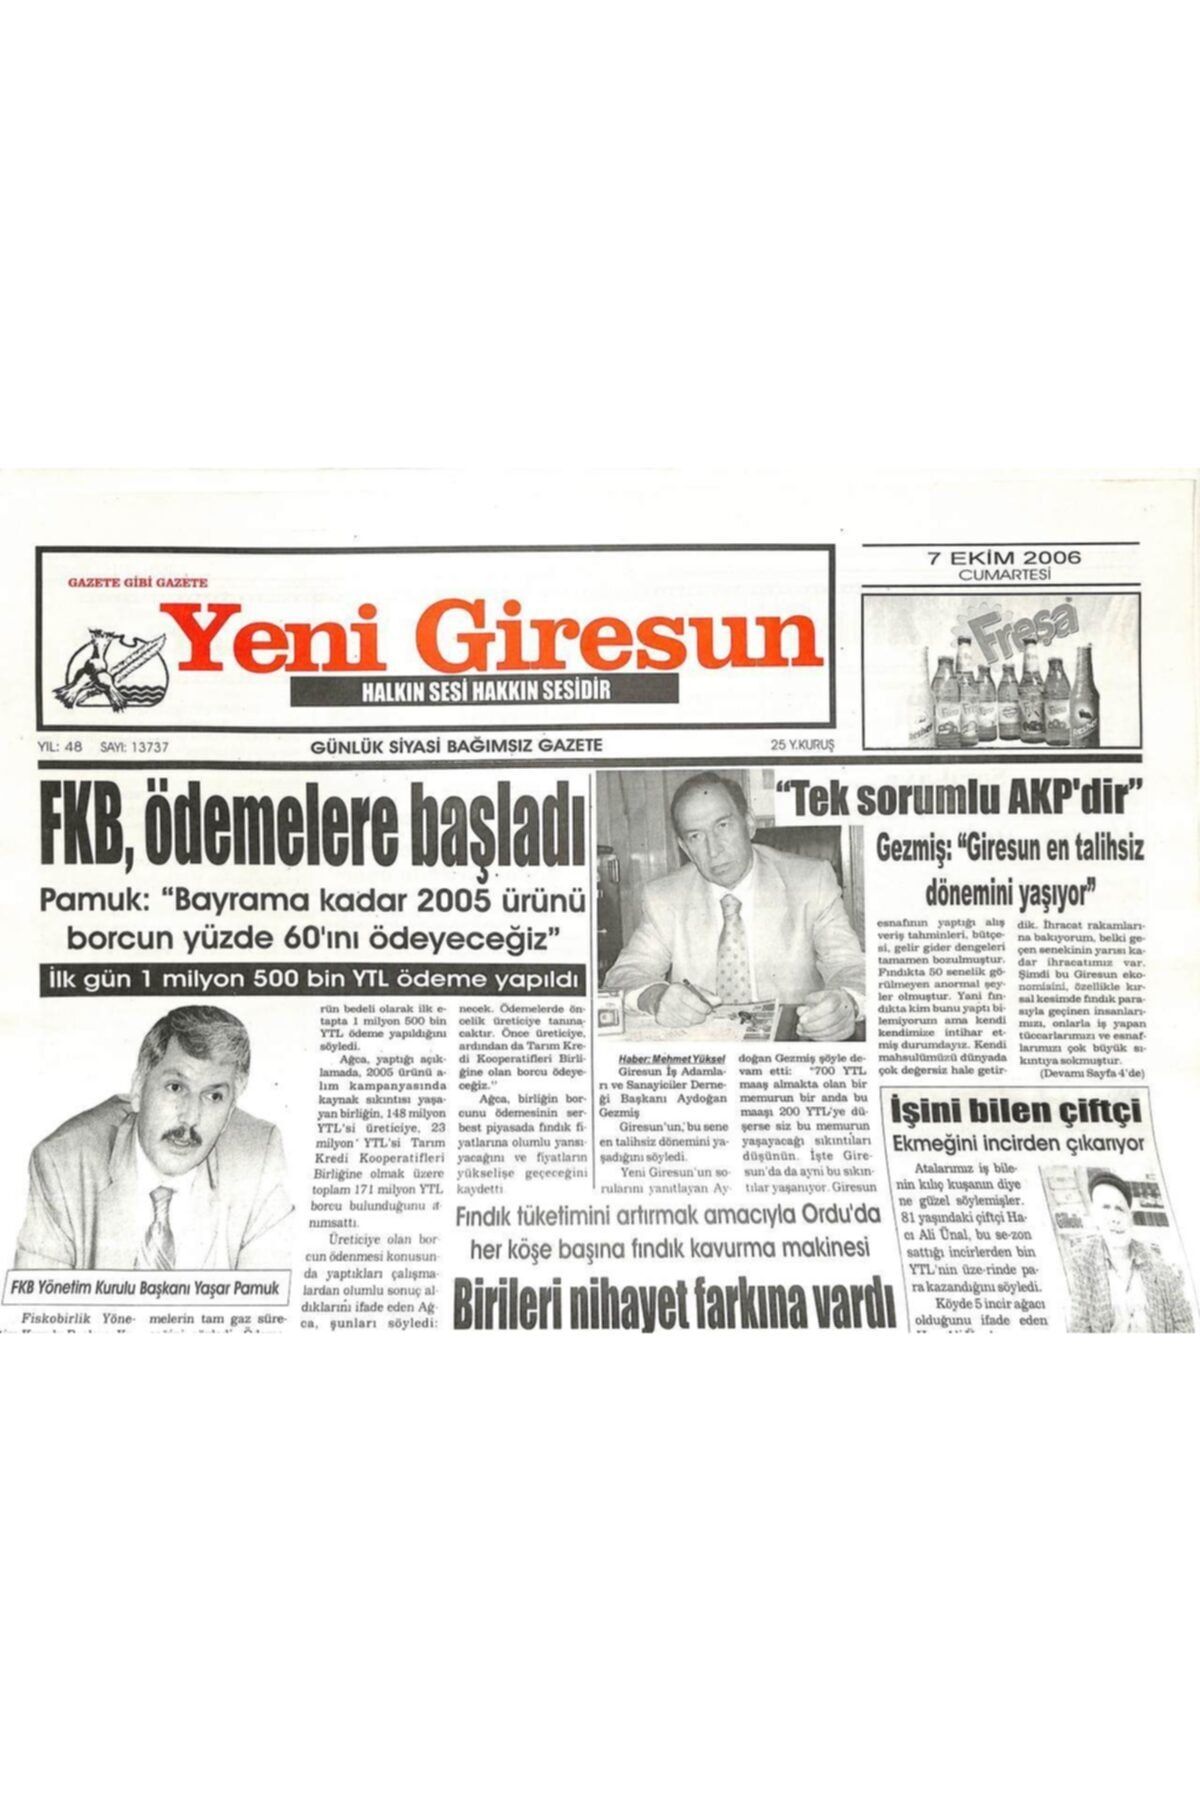 Gökçe Koleksiyon Yeni Giresun Gazetesi 7 Ekim 2006 - Islam Hıristiyan Çalışma Grubu Giresun'da Gz107915